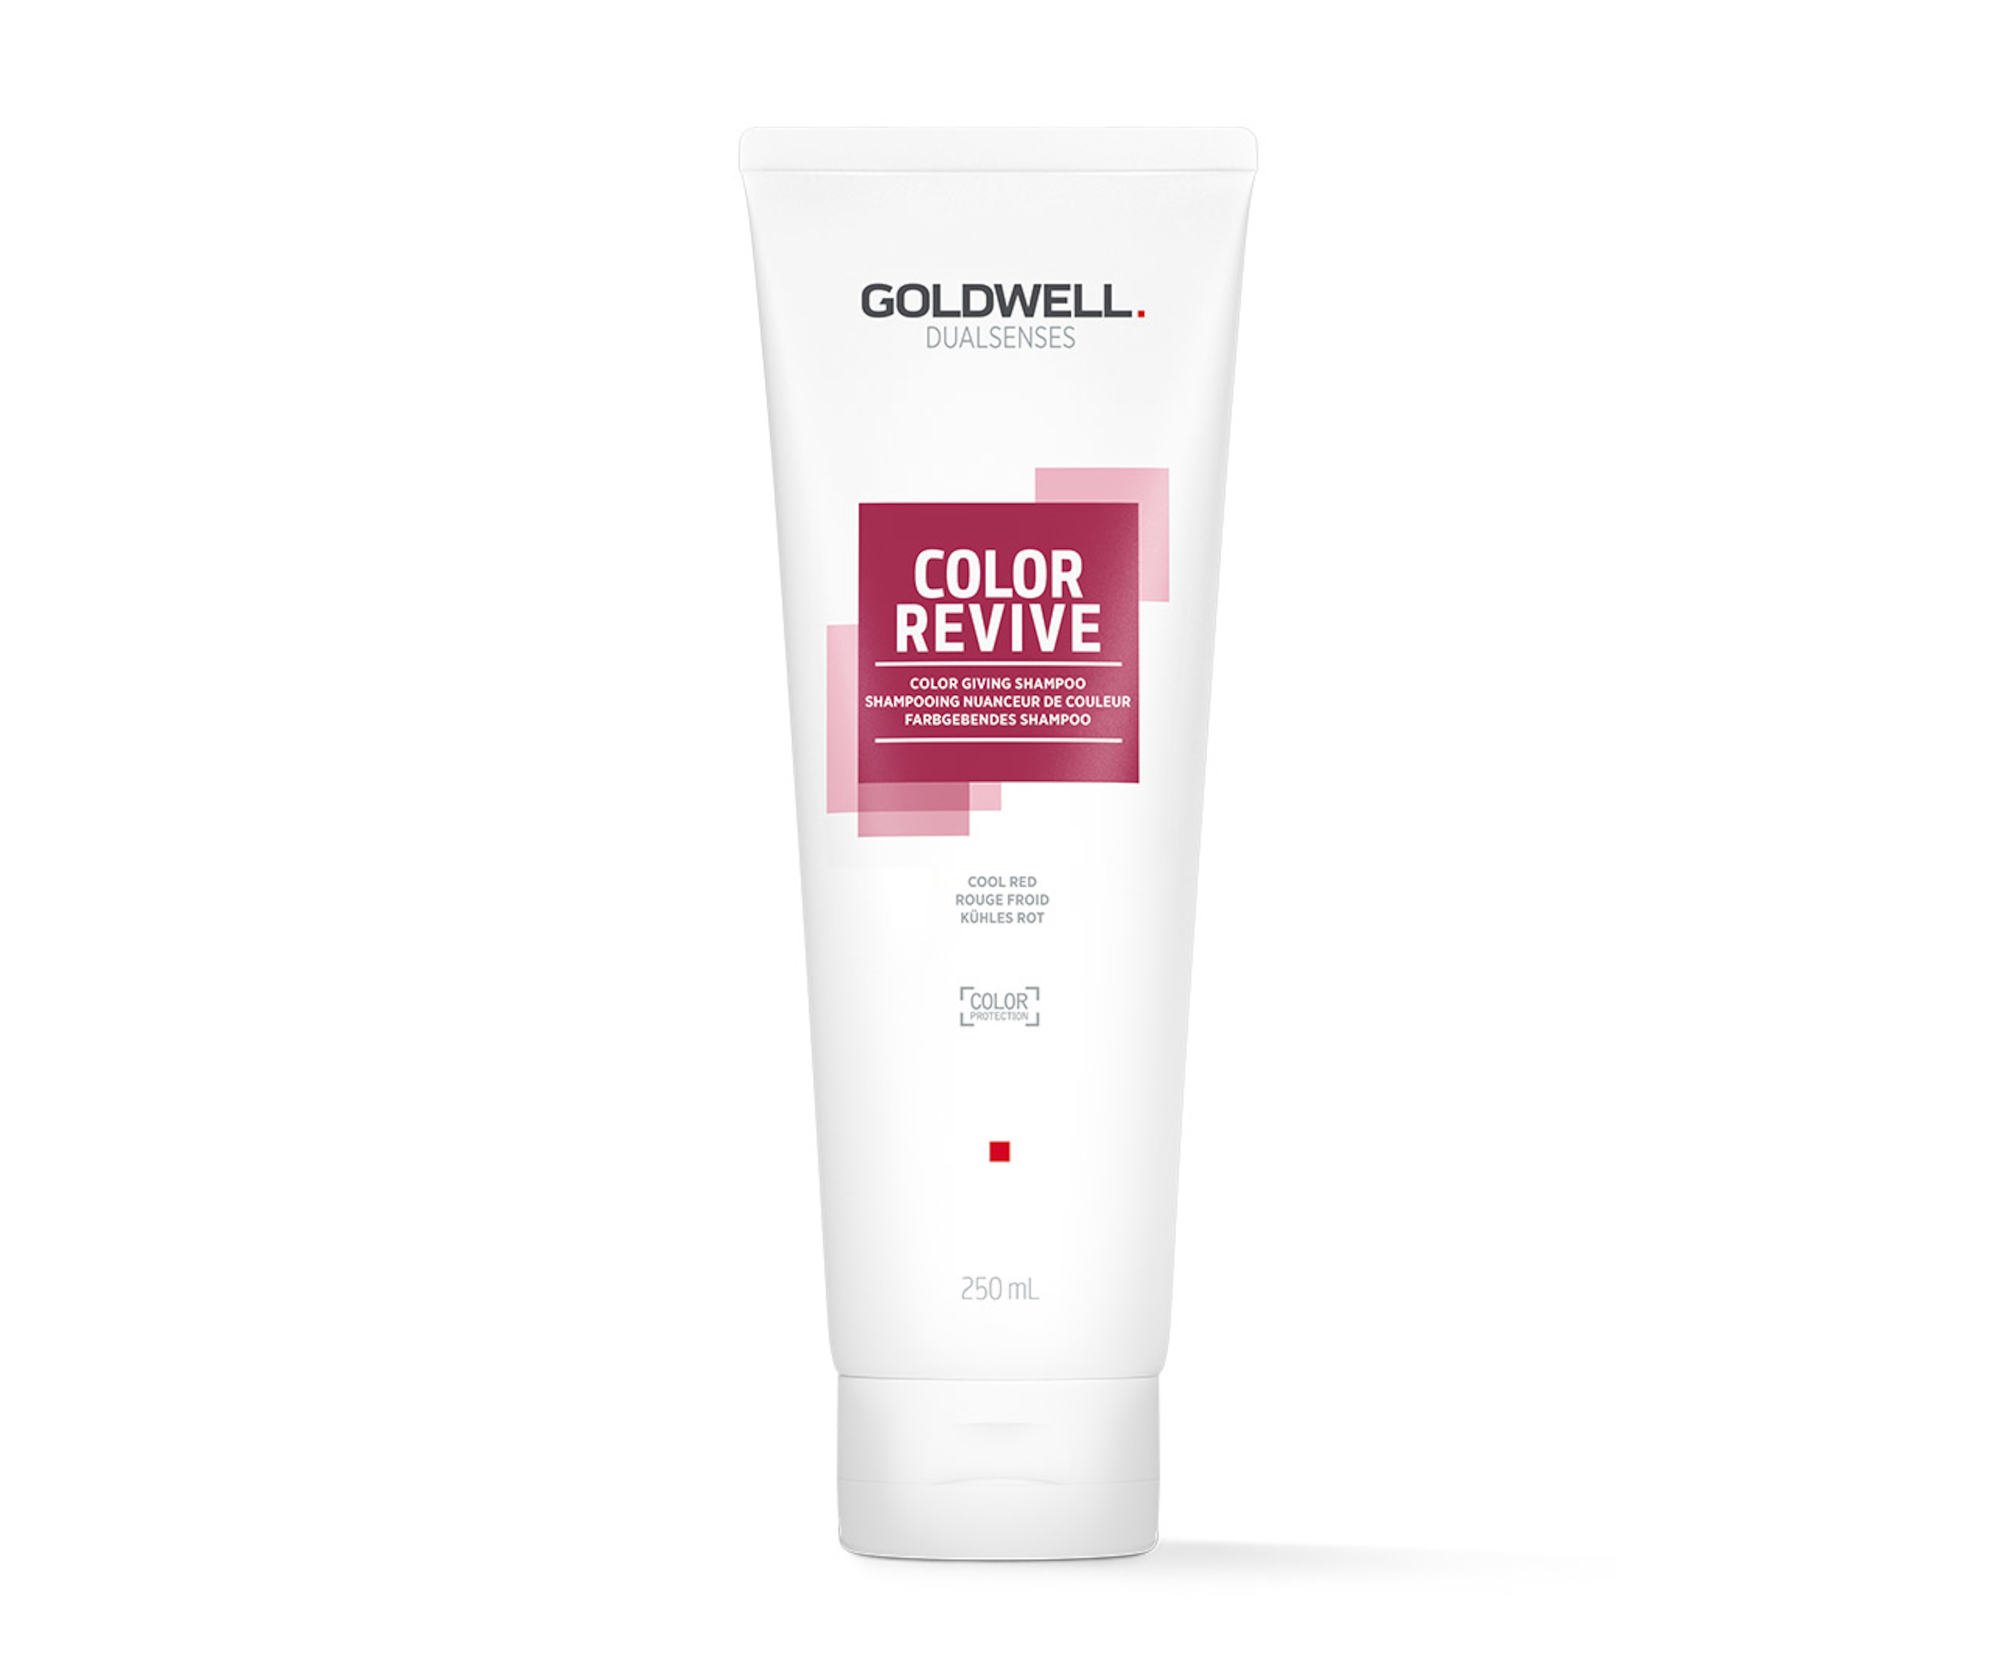 Šampon pro oživení barvy vlasů Goldwell Color Revive - 250 ml, červenofialová (202992) + DÁREK ZDARMA